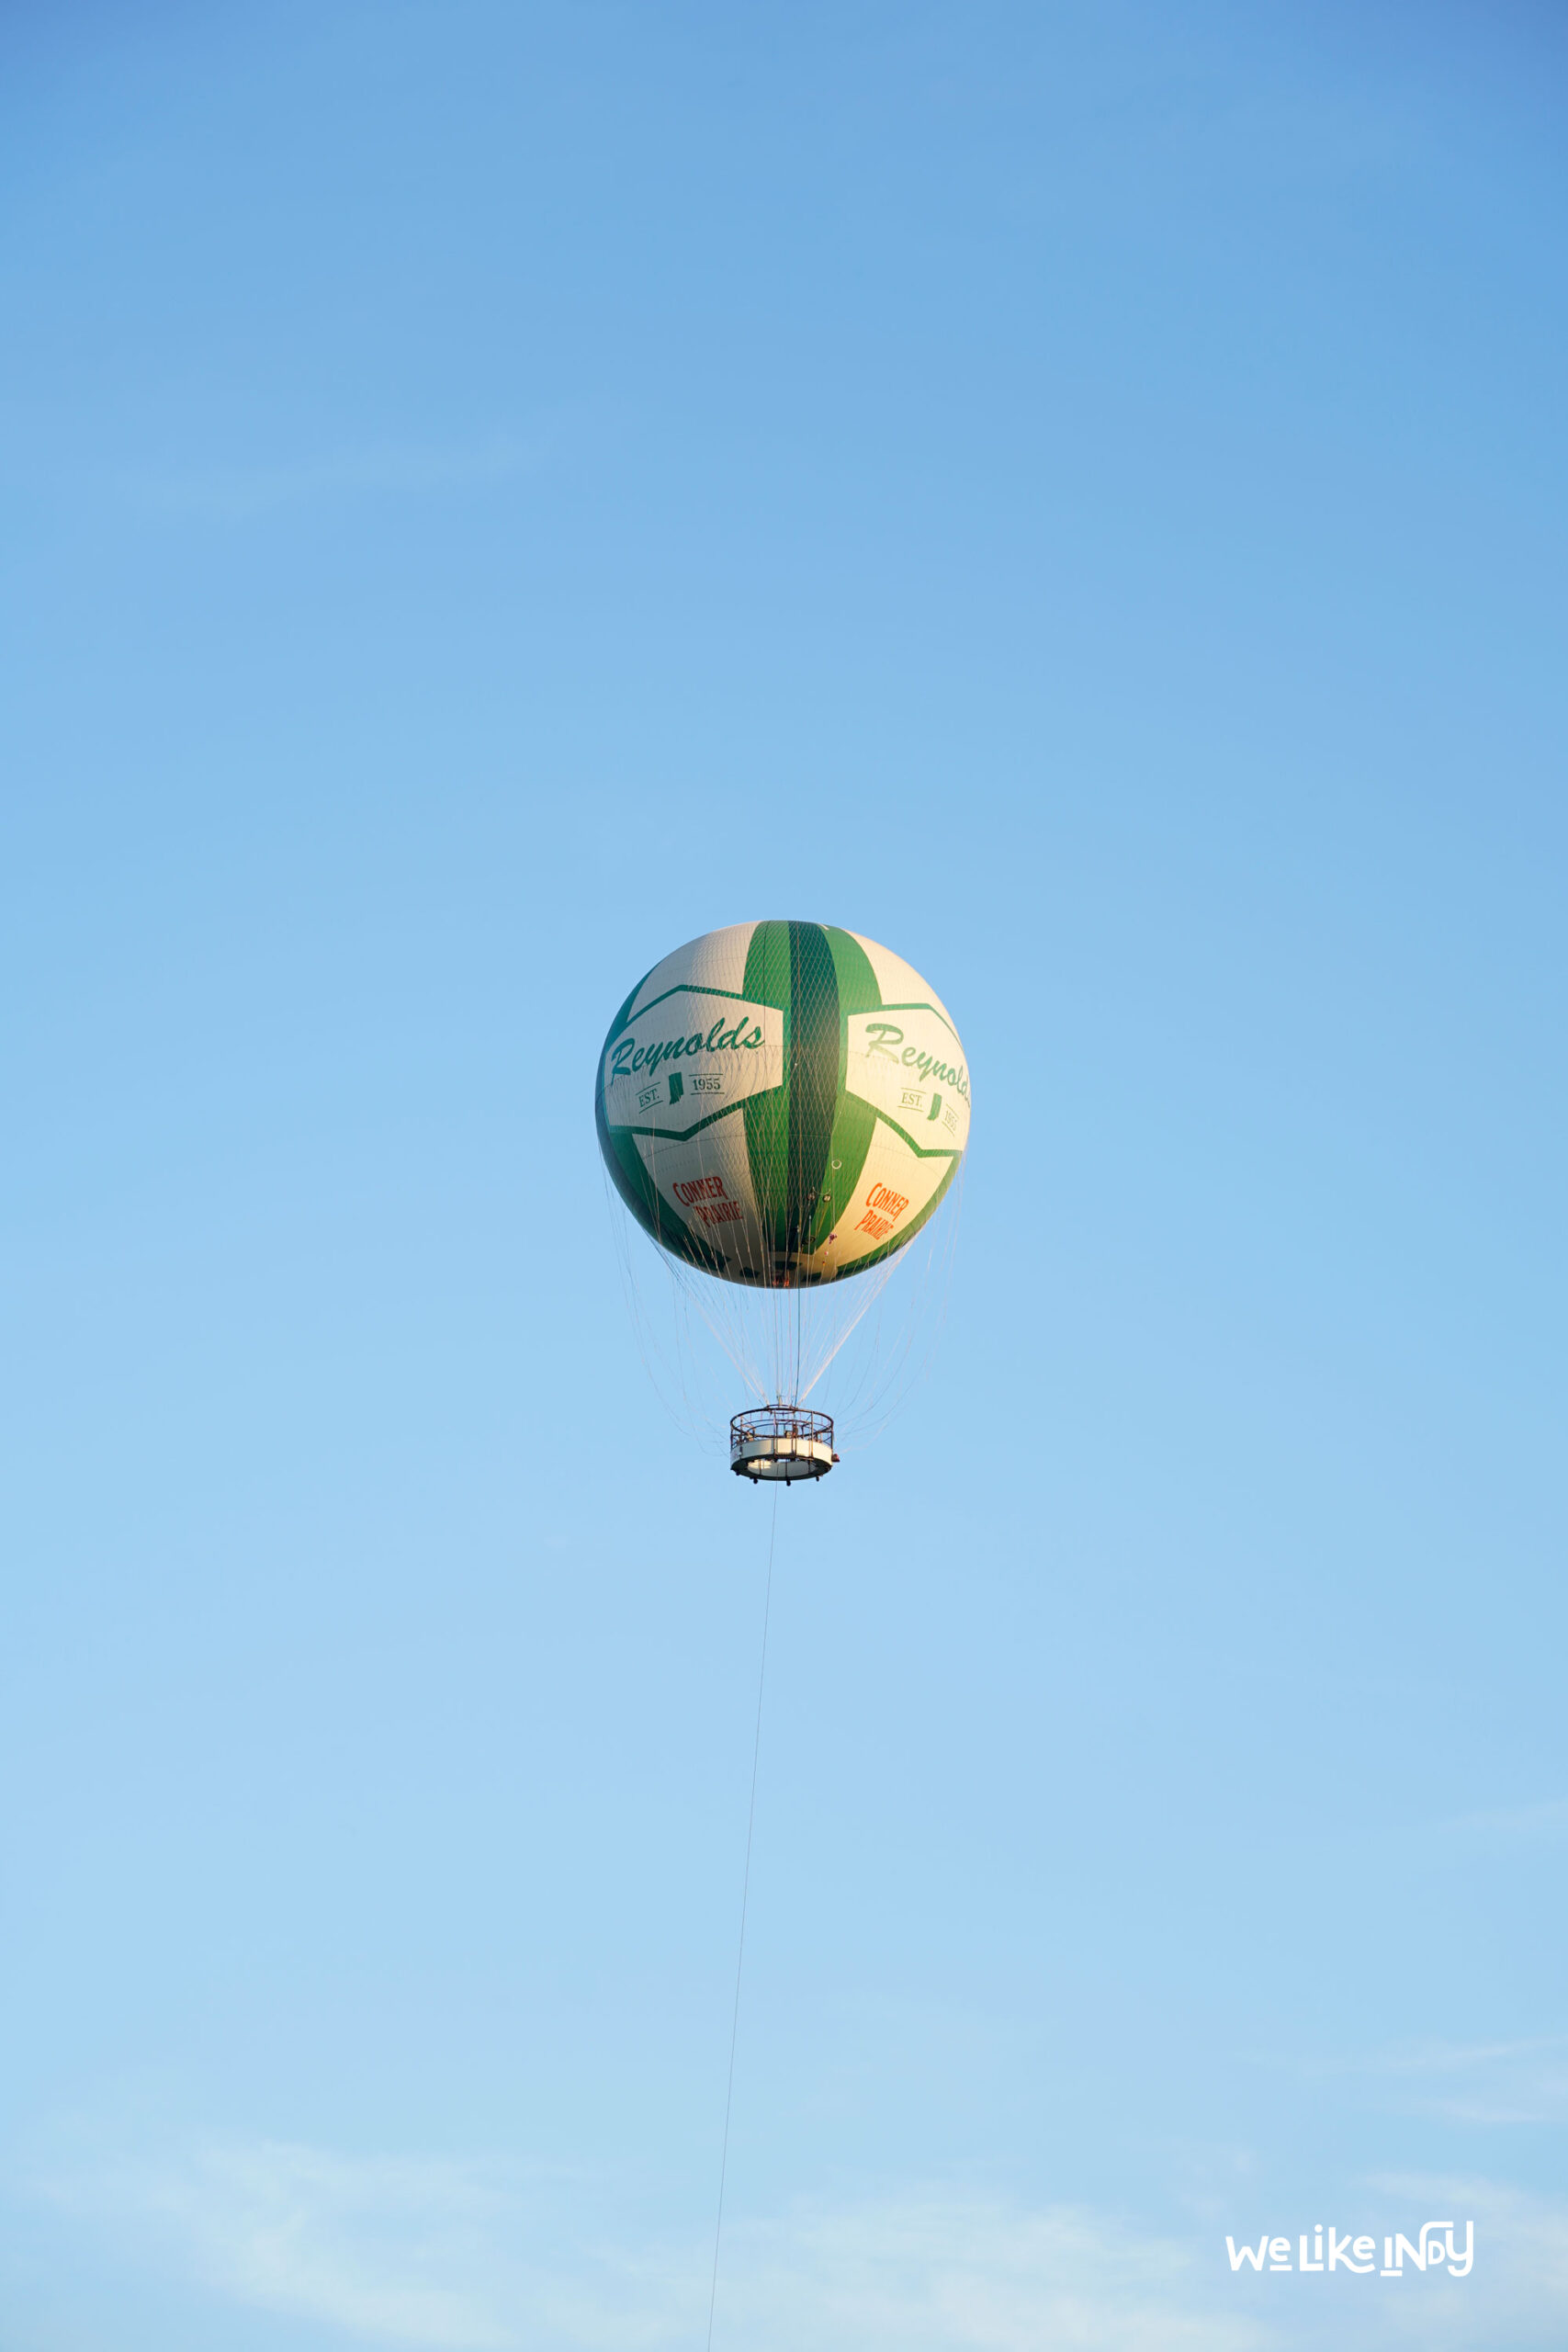 Jupiter Flights Balloon Festival at Conner Prairie